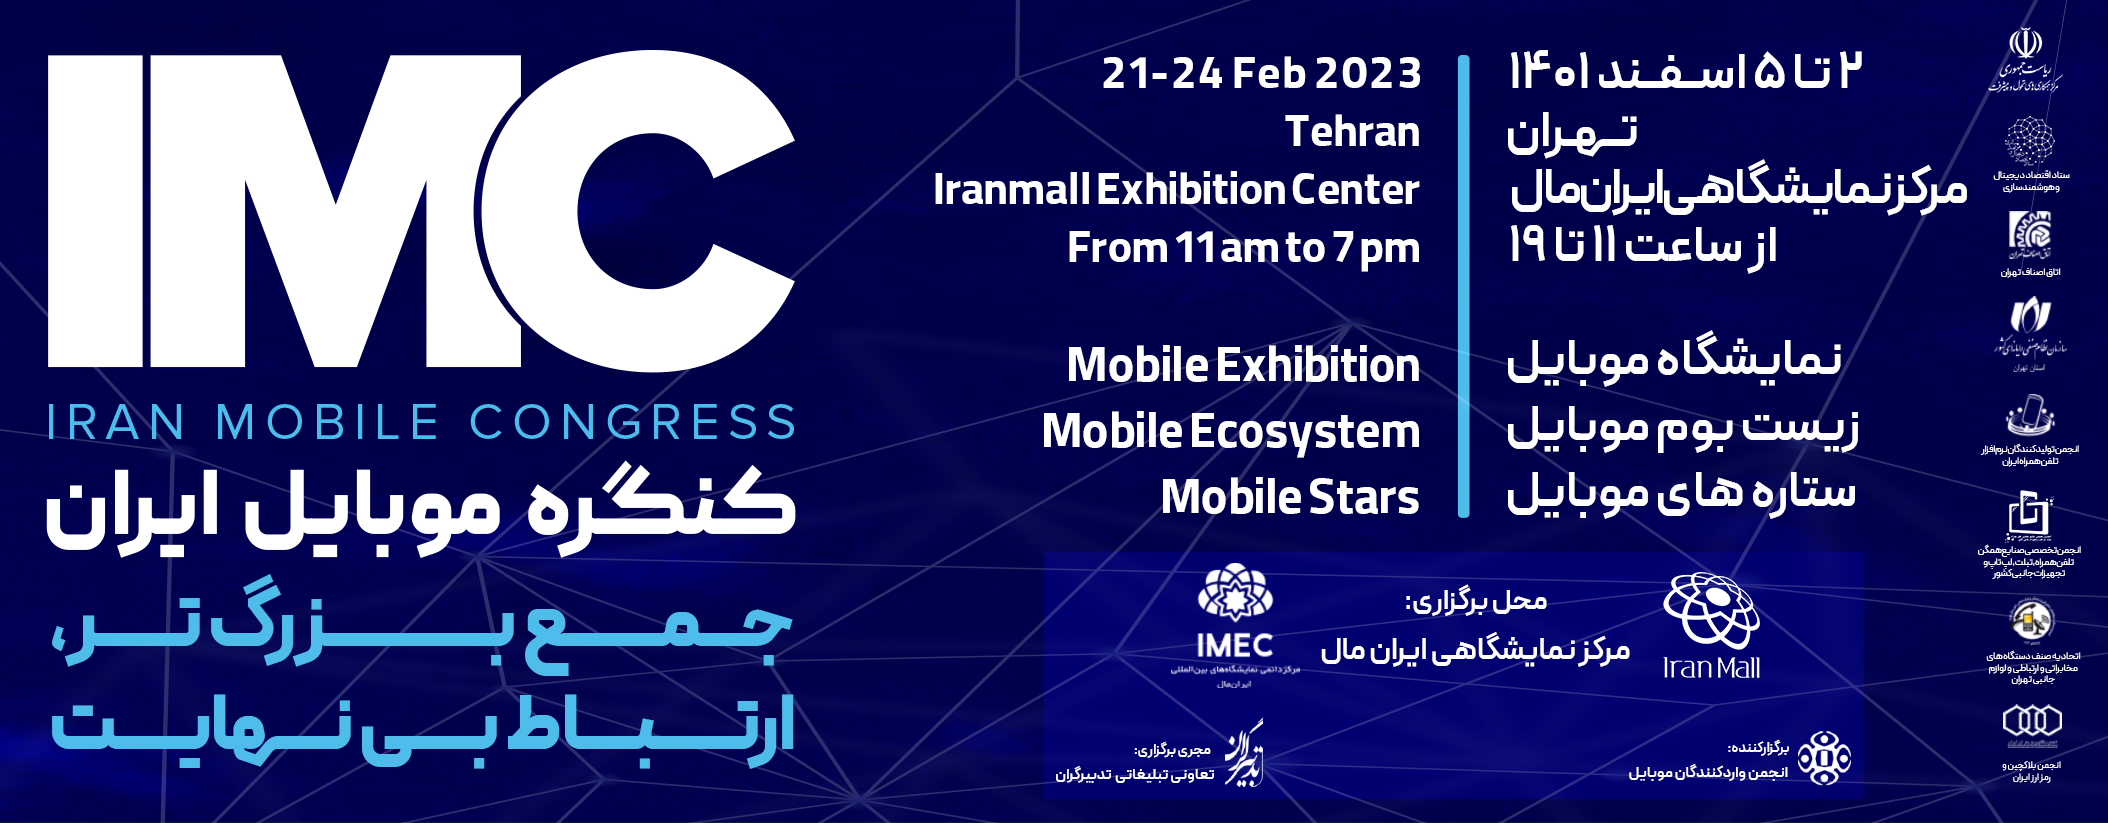 نمایشگاه و کنگره موبایل ایران